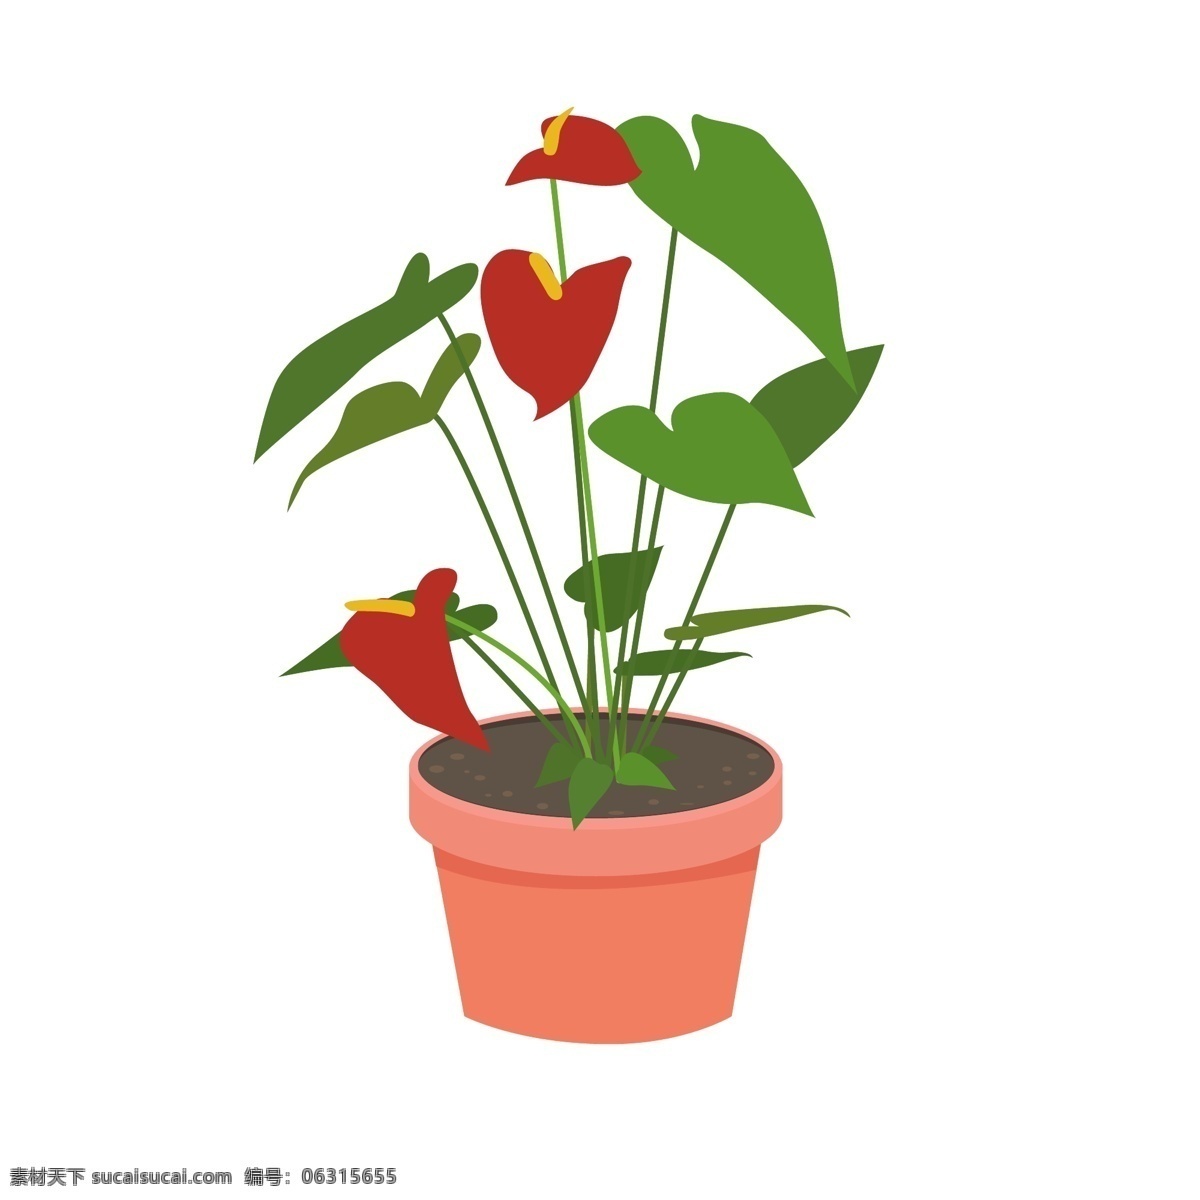 红掌 家居 植物 热带 室内 盆栽 矢量 元素 绿植 热带植物 室内植物 吸甲醛 家居植物